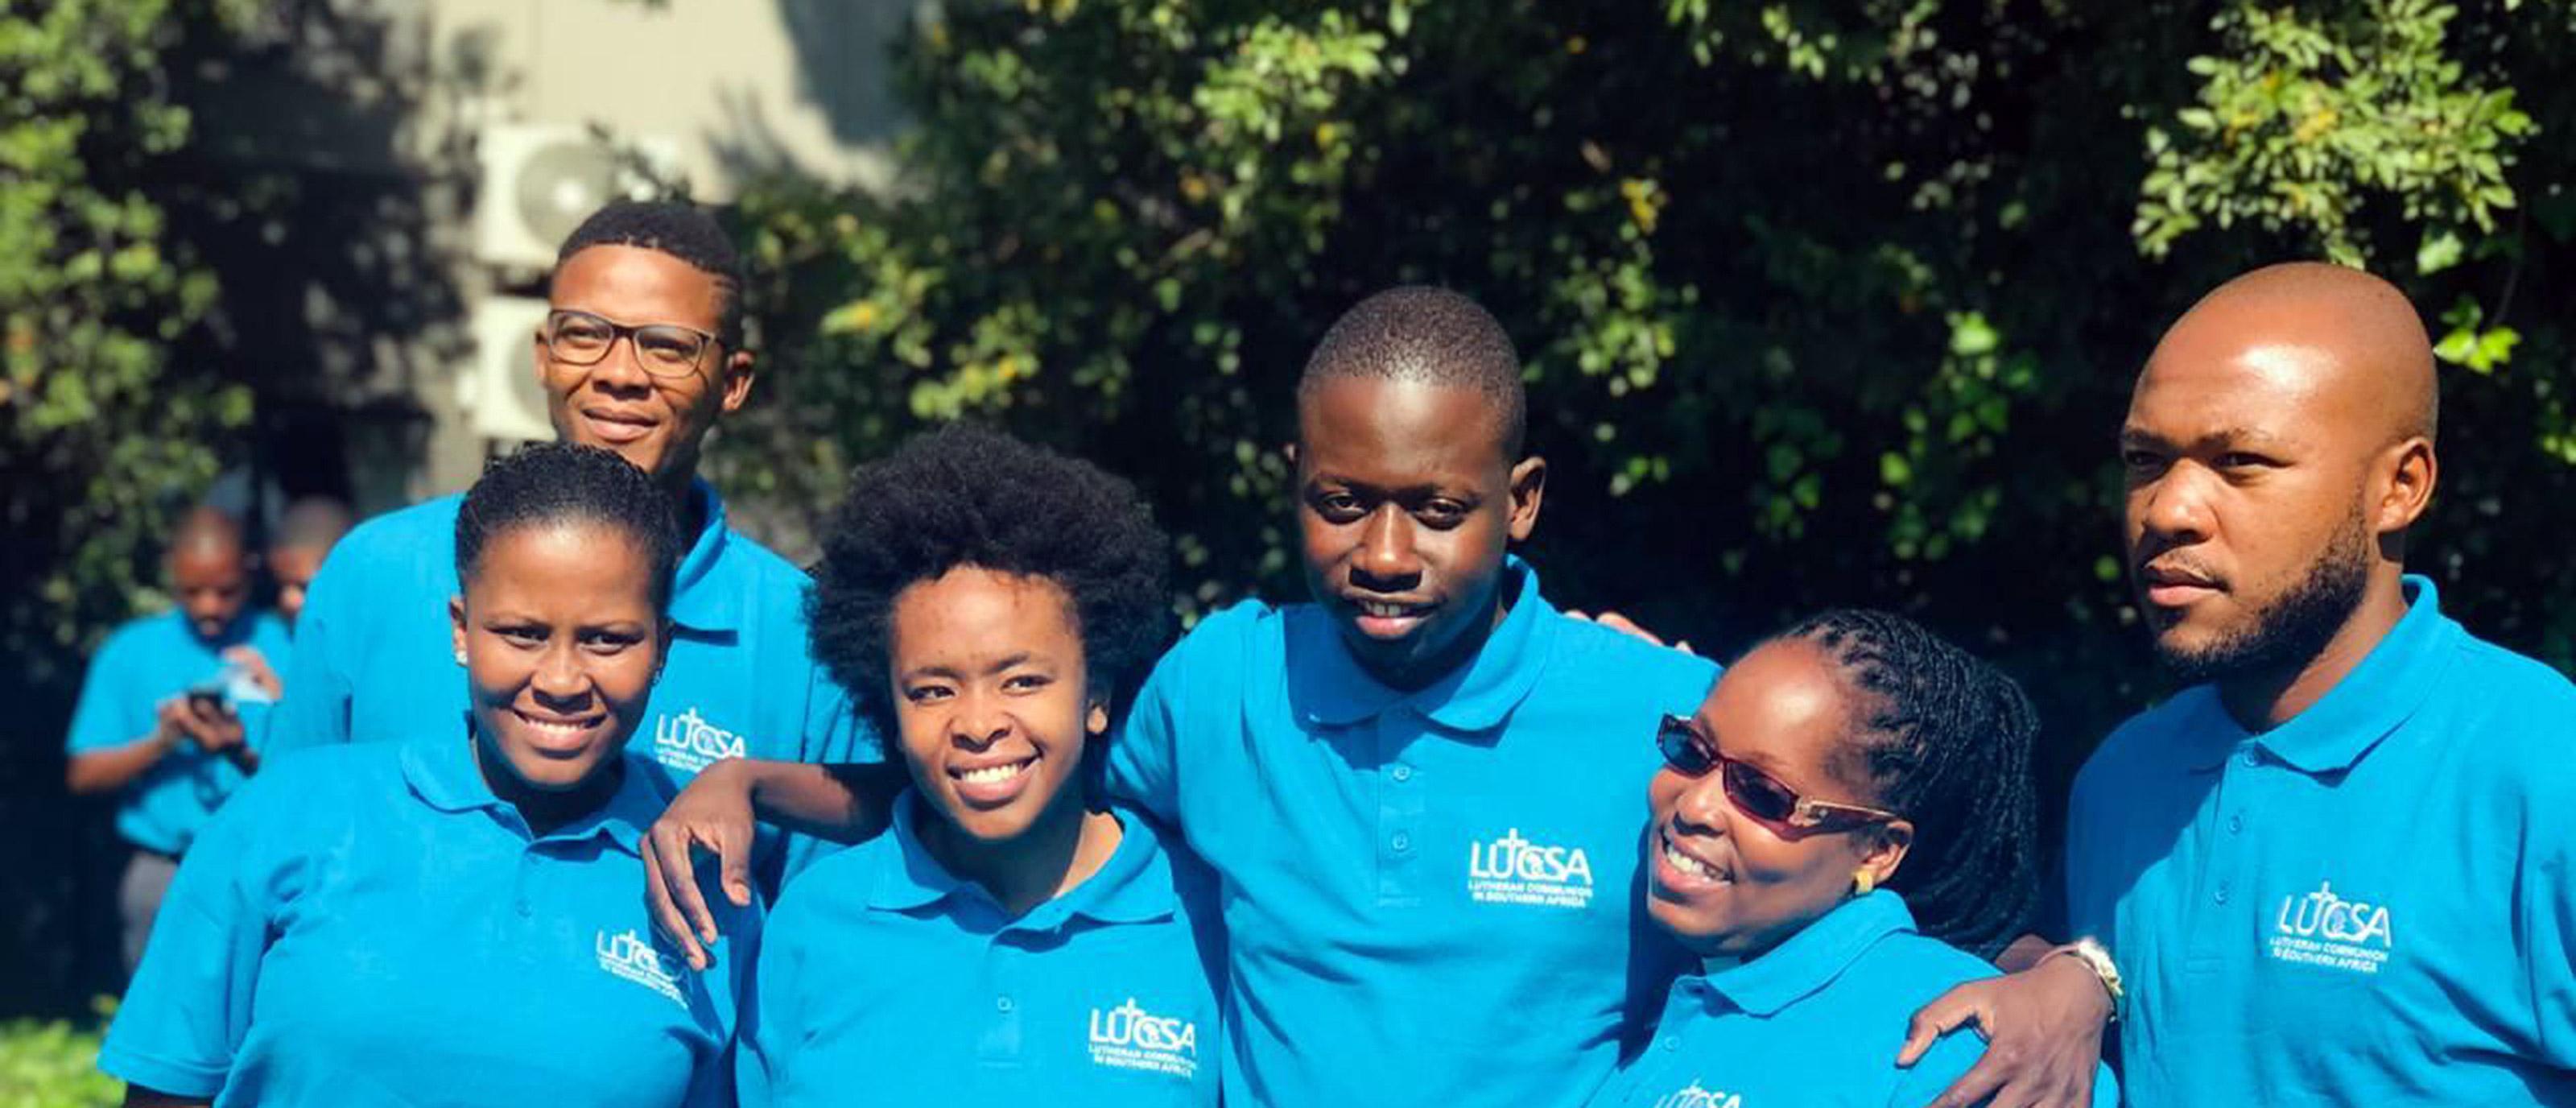 Einige der Teilnehmenden am Workshop der LUCSA für junge Erwachsene in Johannesburg (Südafrika). Foto: LUCSA